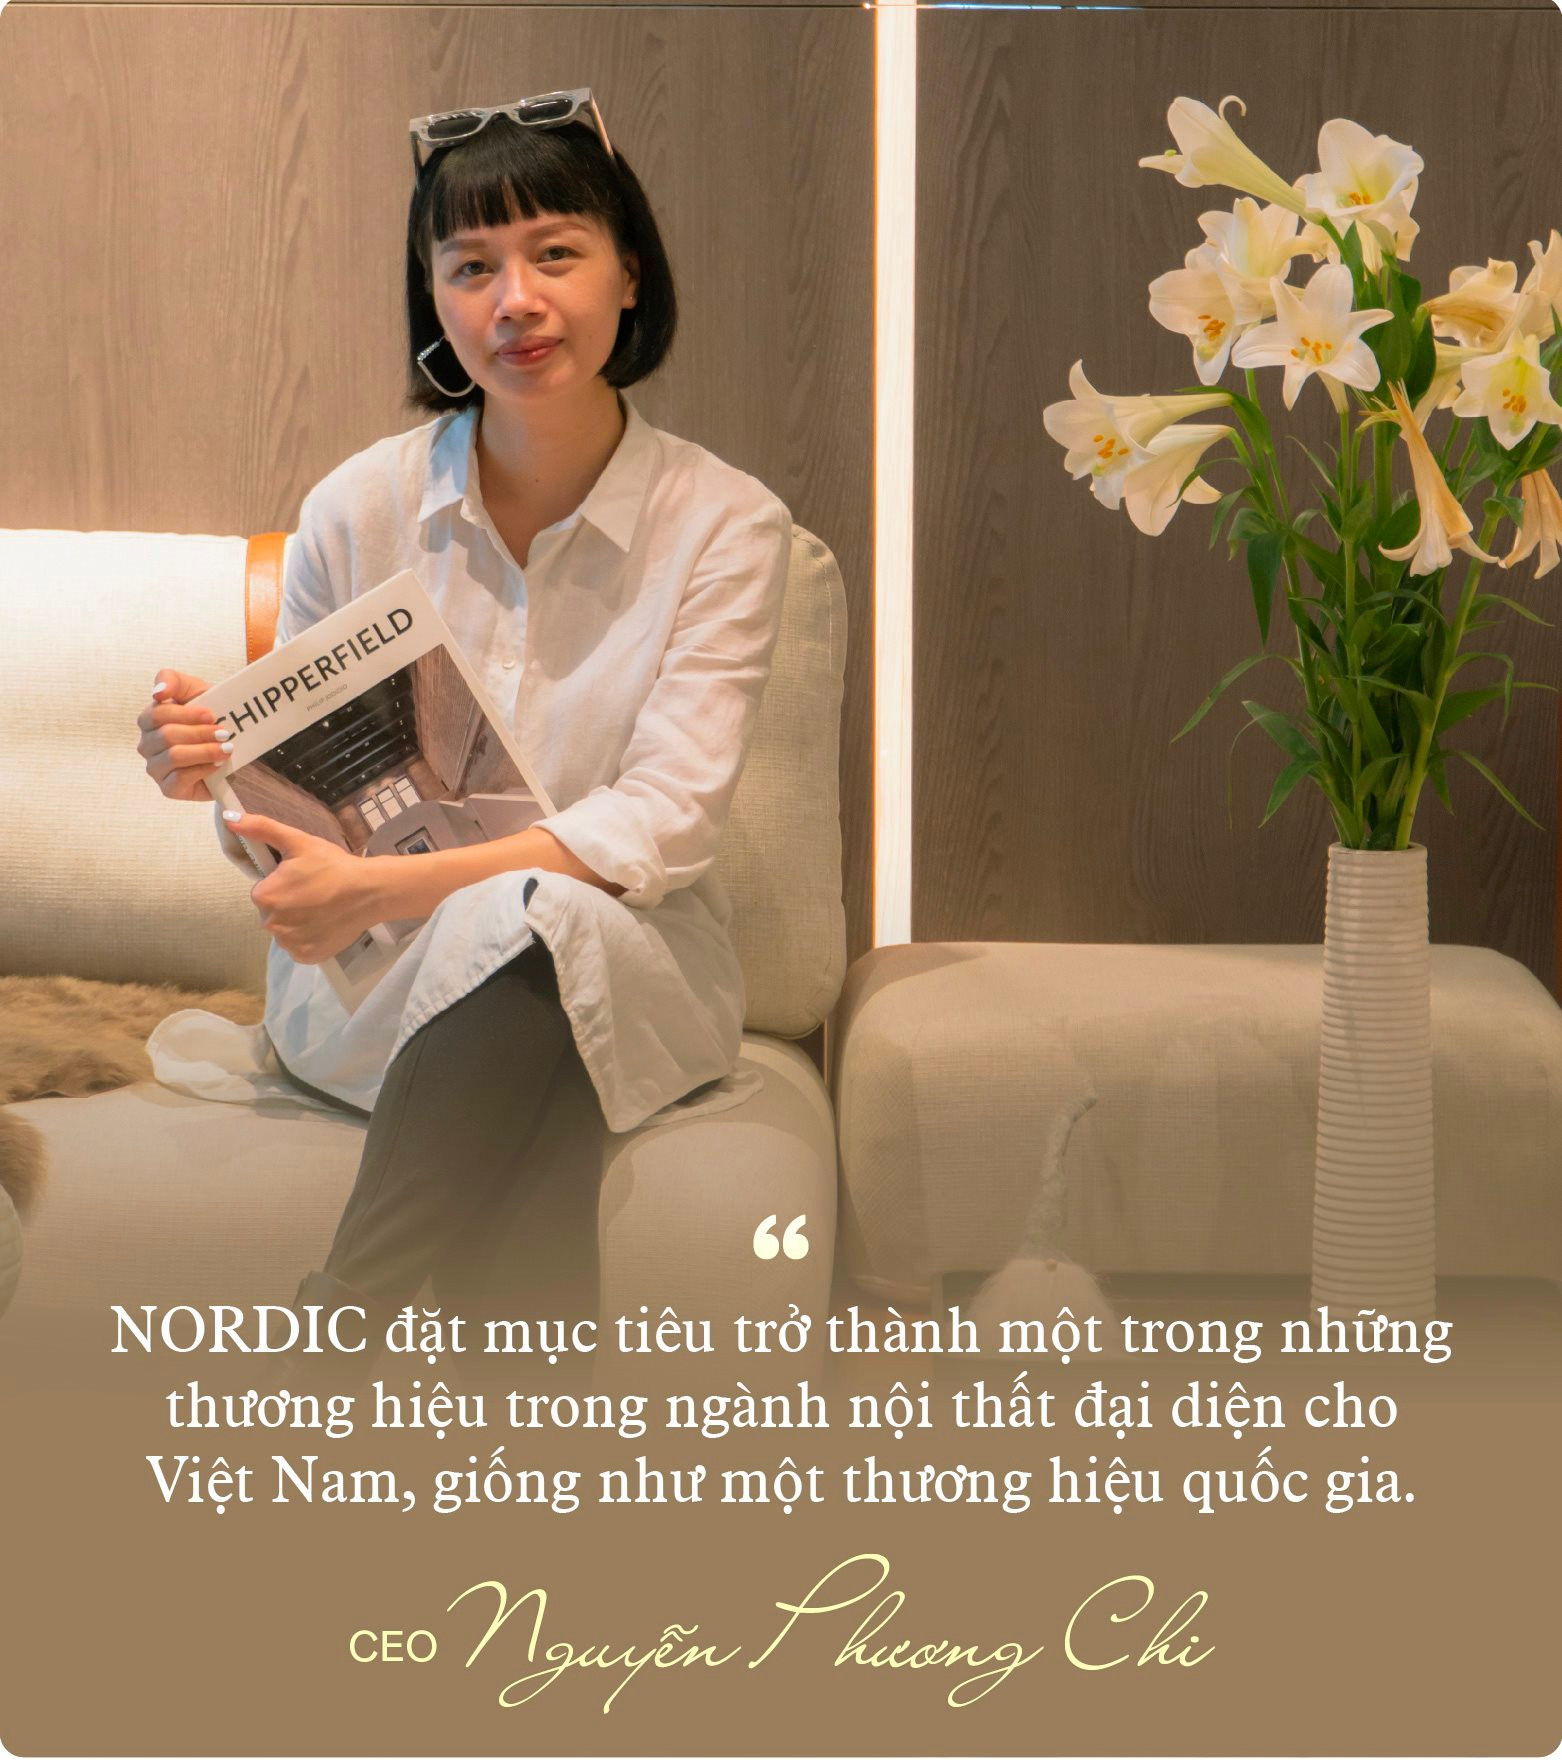 Nữ KTS xây dựng thương hiệu nội thất Made in Viet Nam, bán hơn 50 triệu 1 chiếc sofa vẫn đắt khách: &quot;Giá rẻ hơn thương hiệu ngoại 5 -10 lần nhưng chất lượng và trải nghiệm như nhau&quot; - Ảnh 12.